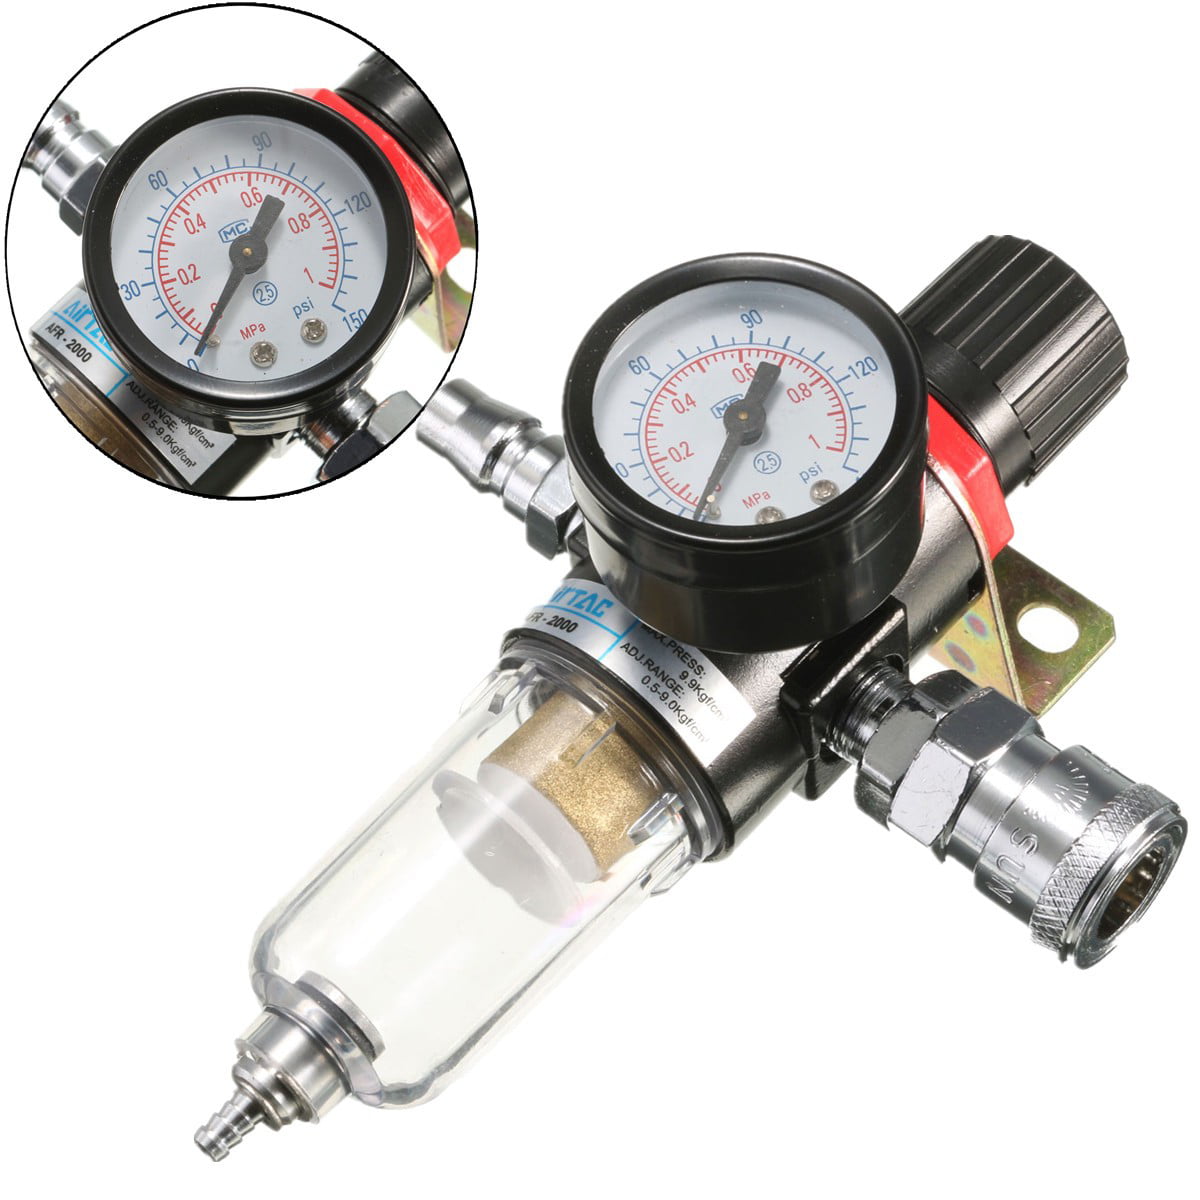 New Air Pressure Regulator Oil/Water Separator Trap Filter Airbrush Compressor 